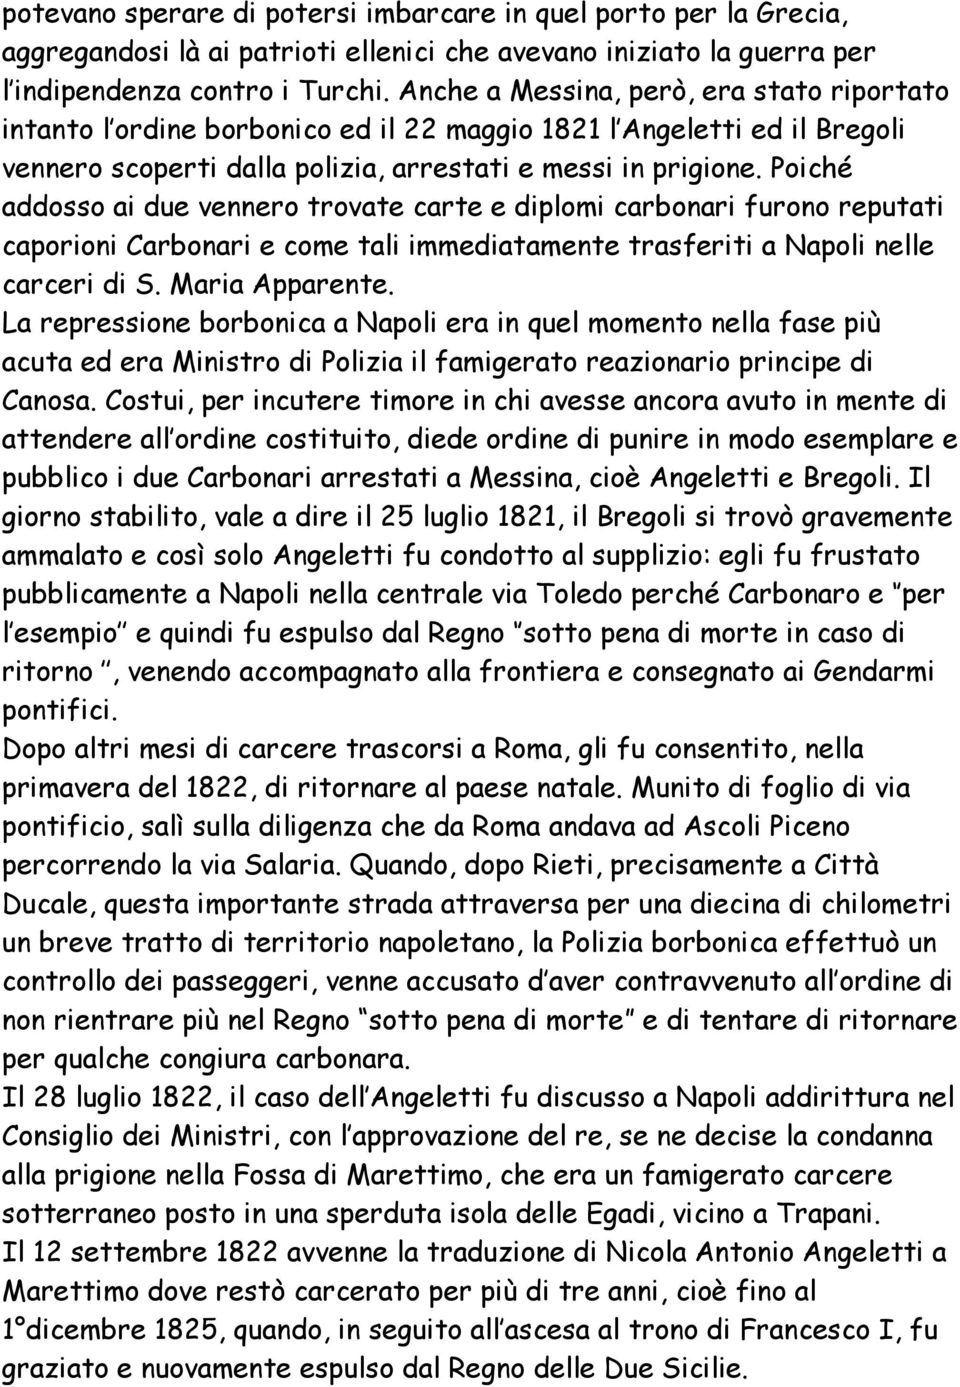 Poiché addosso ai due vennero trovate carte e diplomi carbonari furono reputati caporioni Carbonari e come tali immediatamente trasferiti a Napoli nelle carceri di S. Maria Apparente.